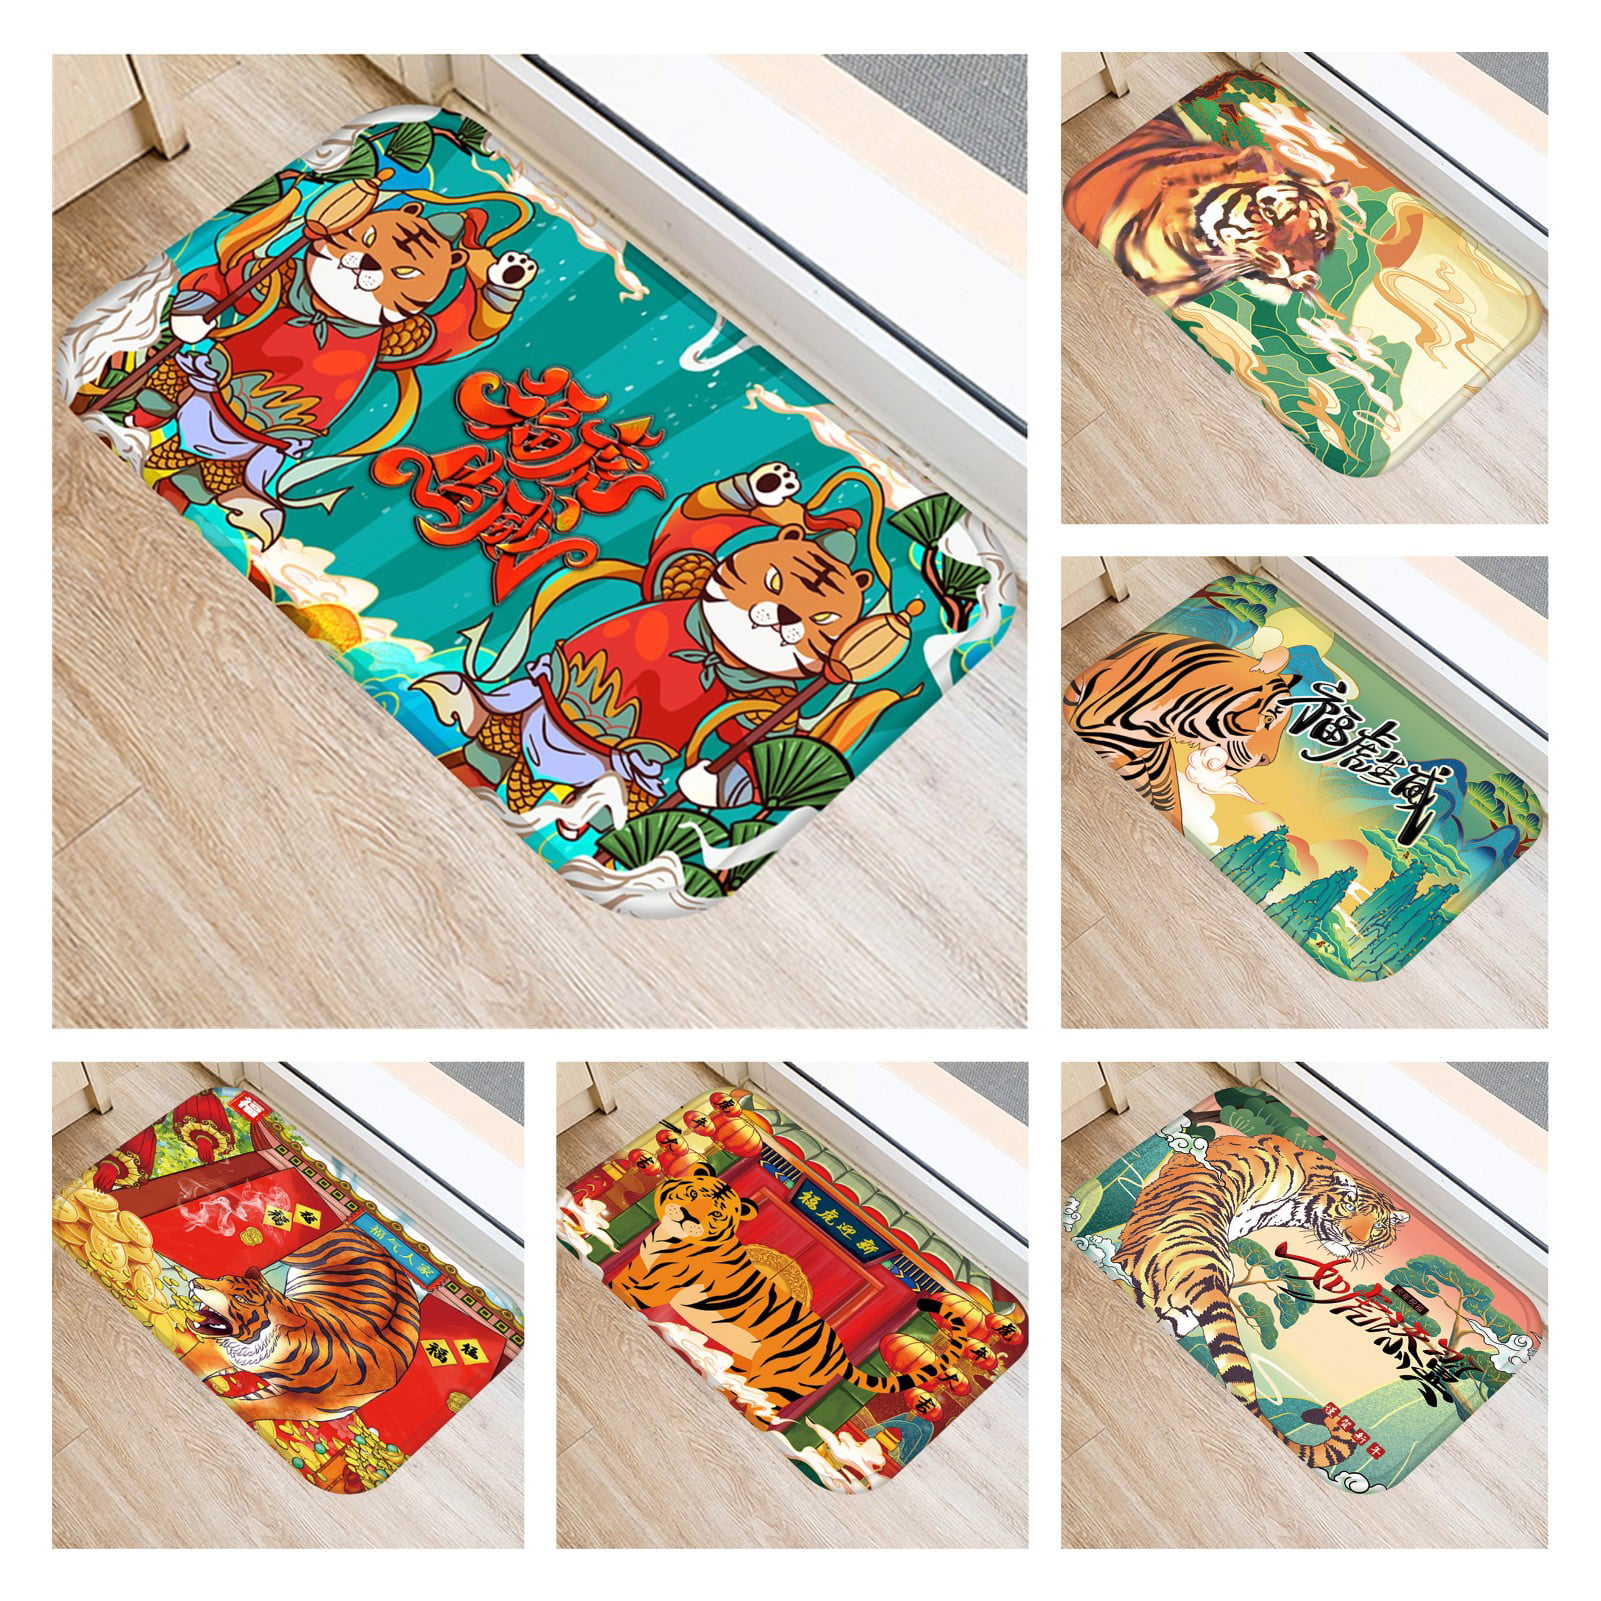 washable bath mat door mat home accessory 60 X 40 cm LB Colorful graffiti 